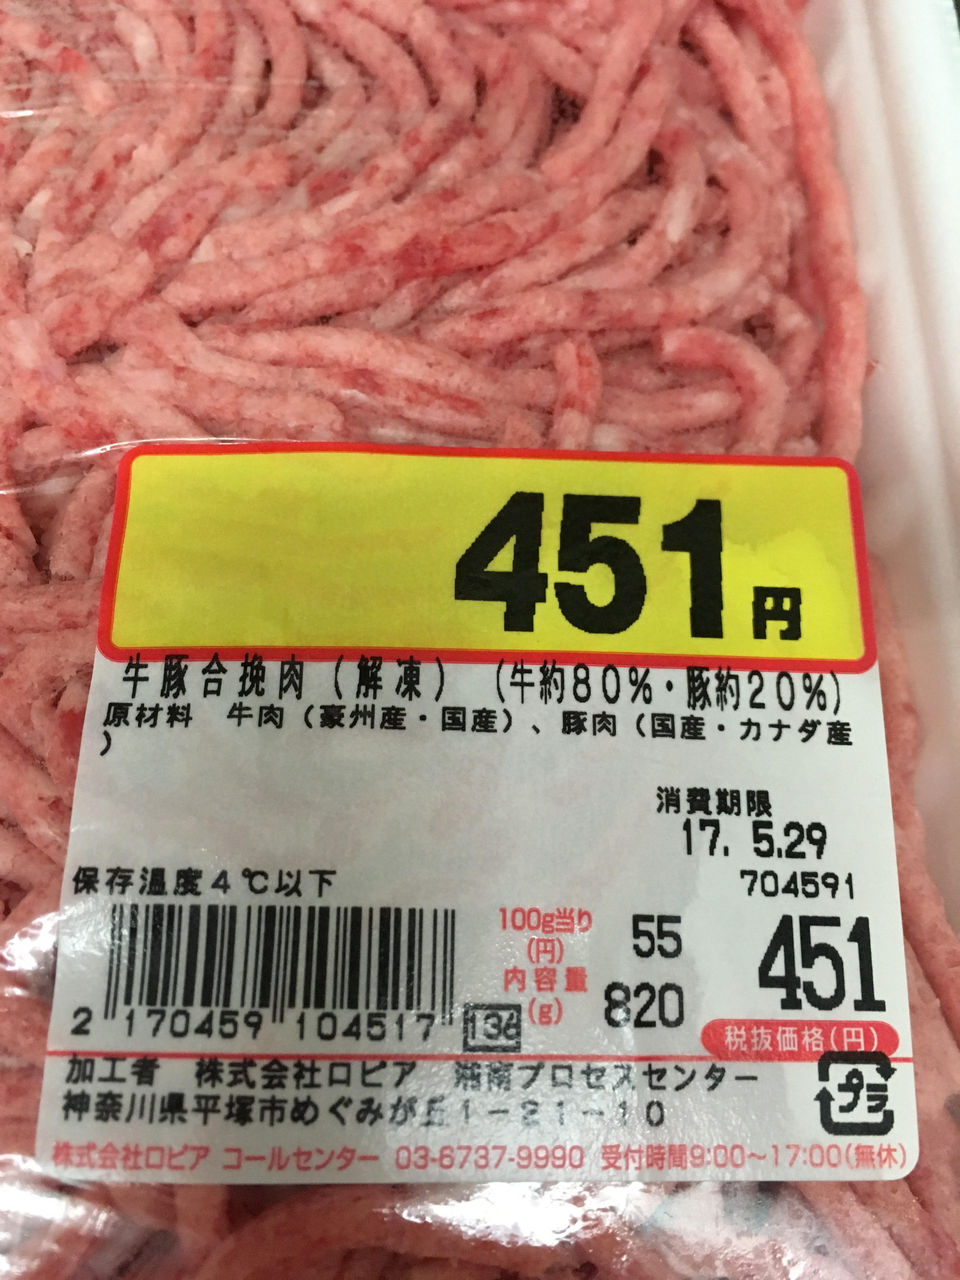 TMR_CAMP
      ロピア柏コジマ店毎月最終土曜日はひき肉が安いのか？先月も安かったよ。
    コメント                        LLL